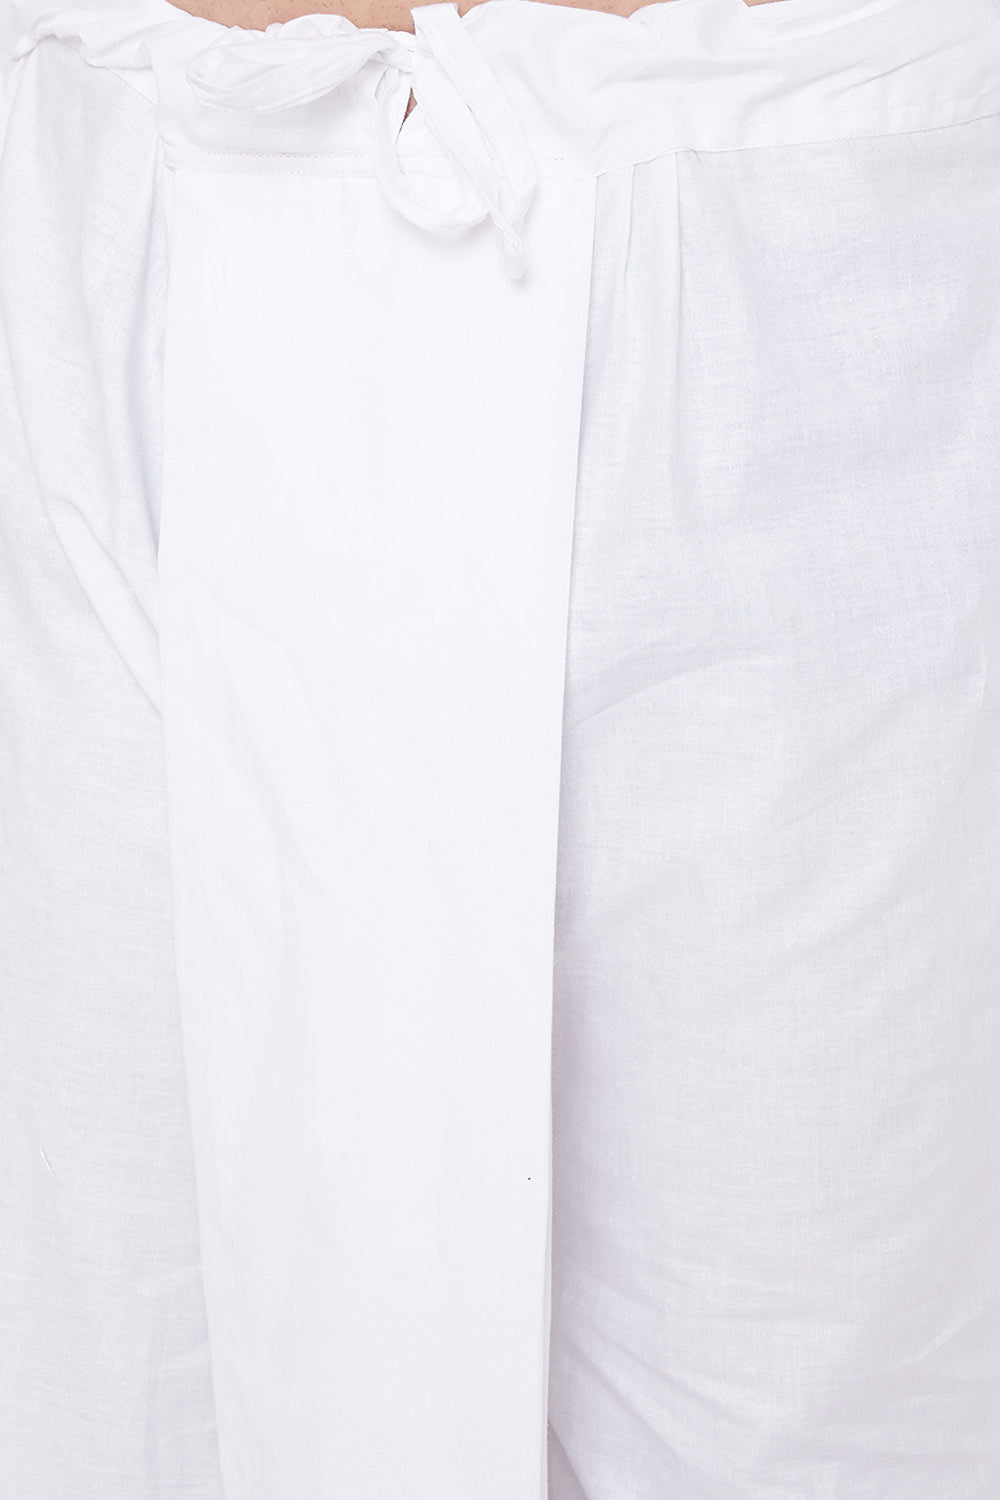 Shop Men's Blended Cotton White Kurta Set